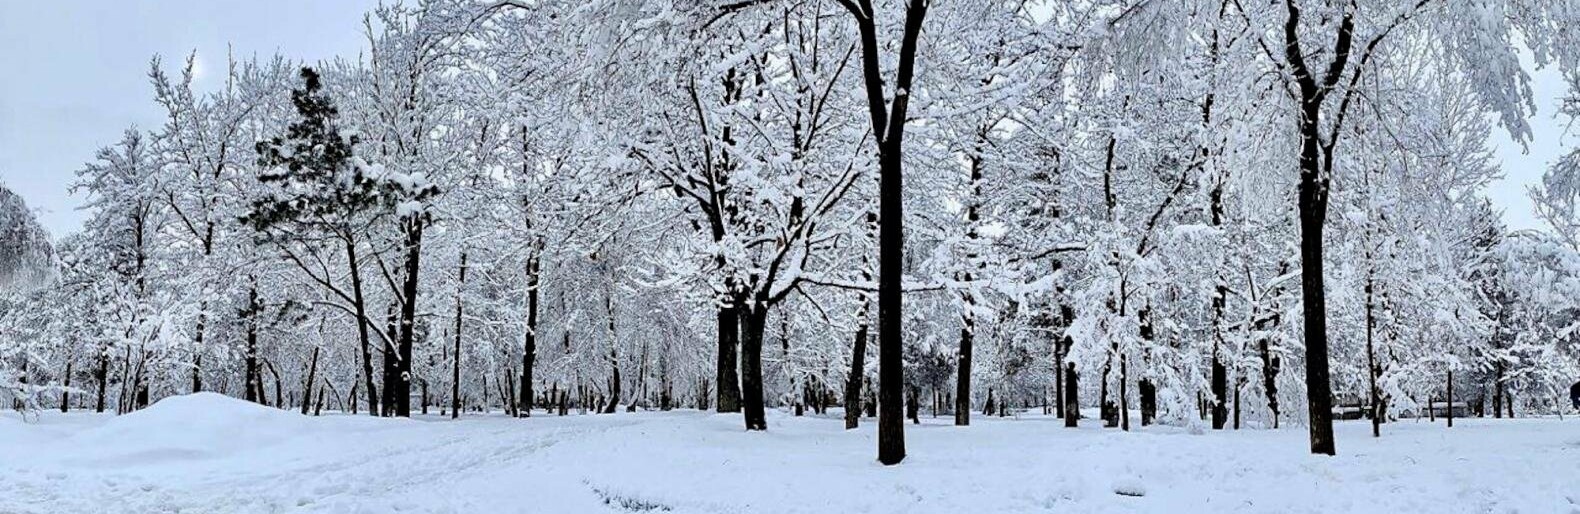 Более 20 сантиметров снега выпало в горных районах Алматы